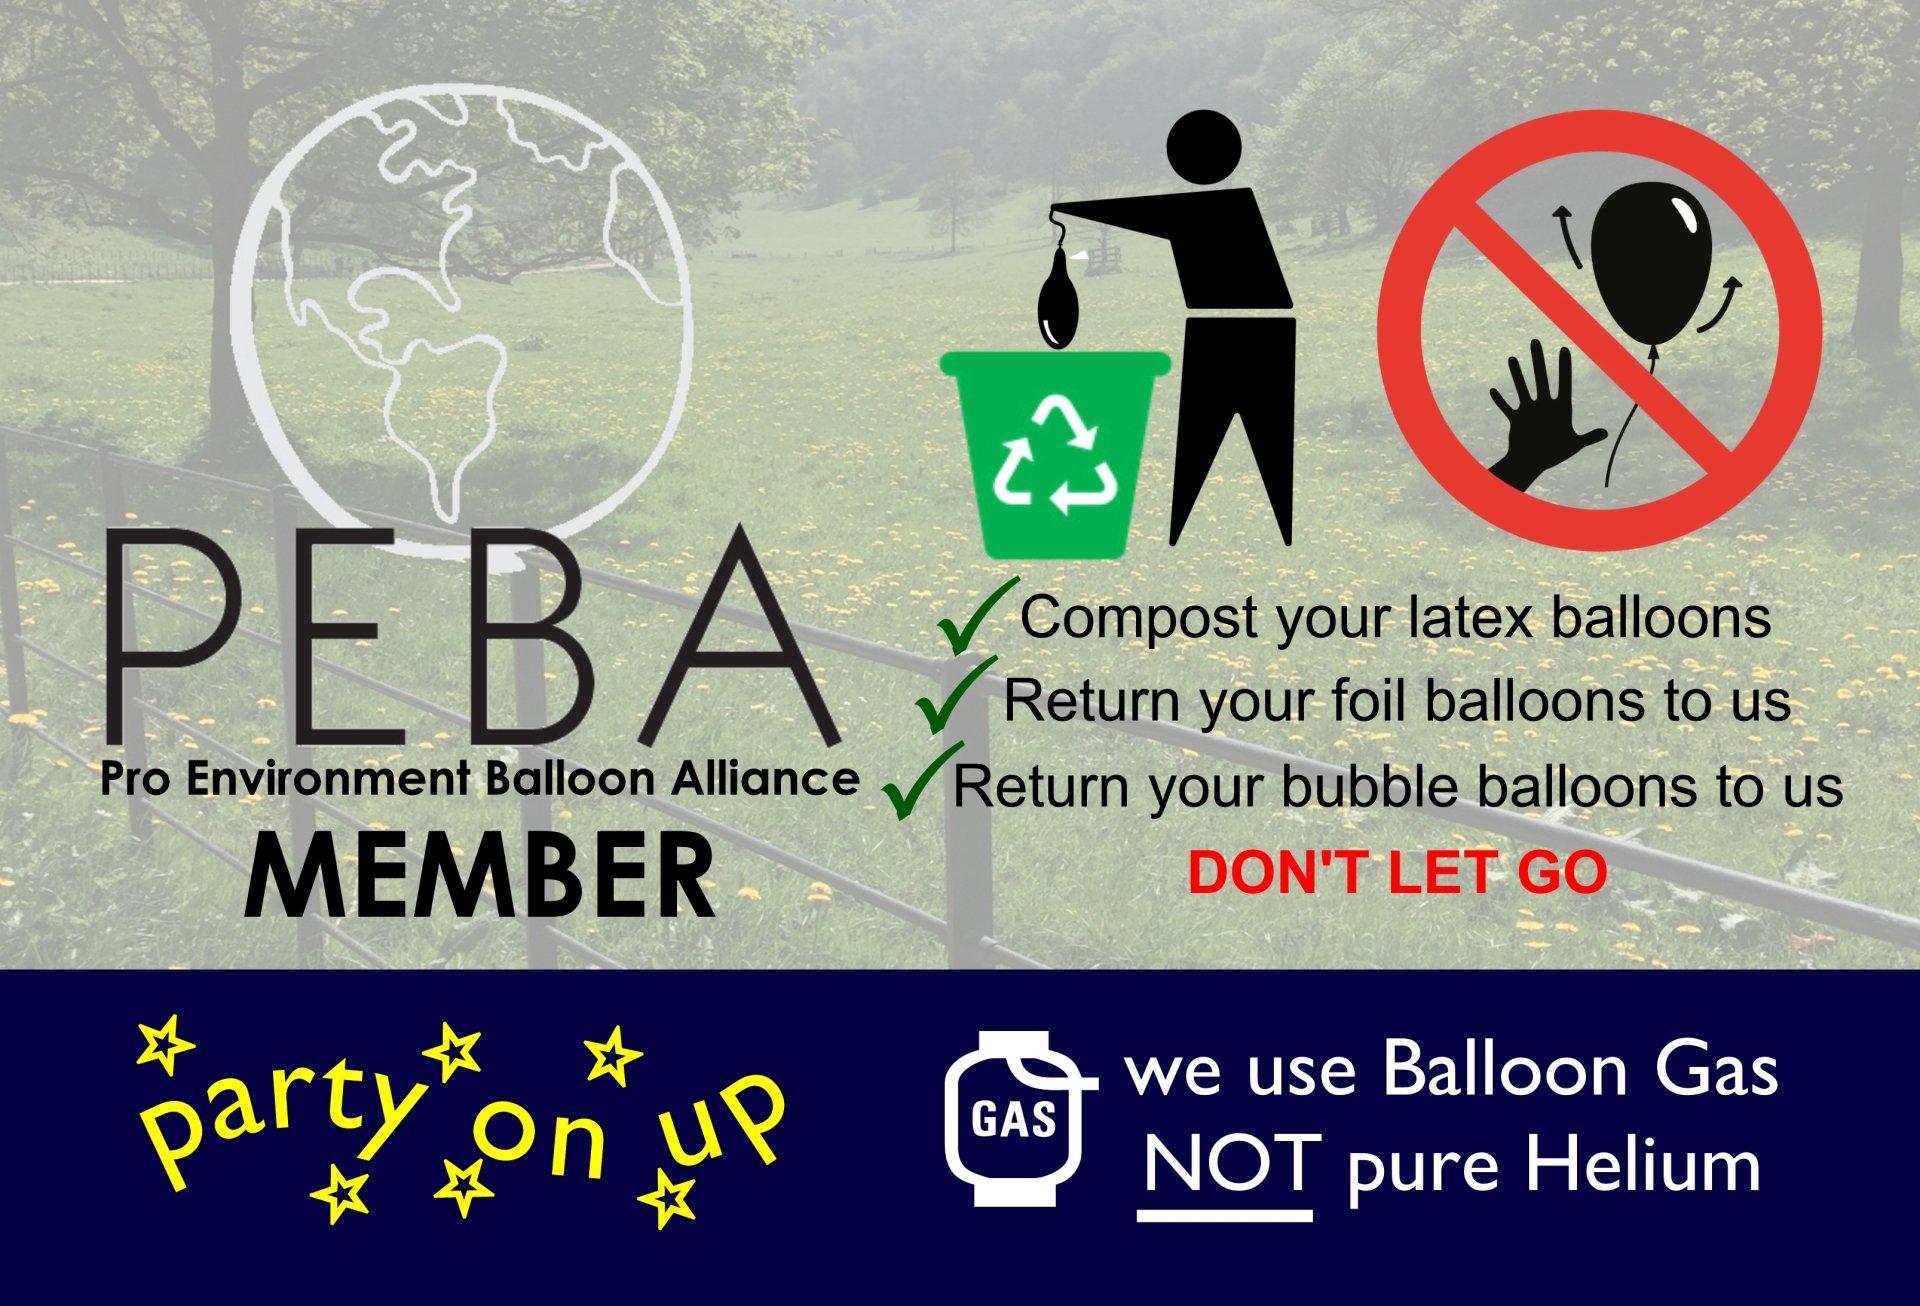 Pro Environment Balloon Alliance